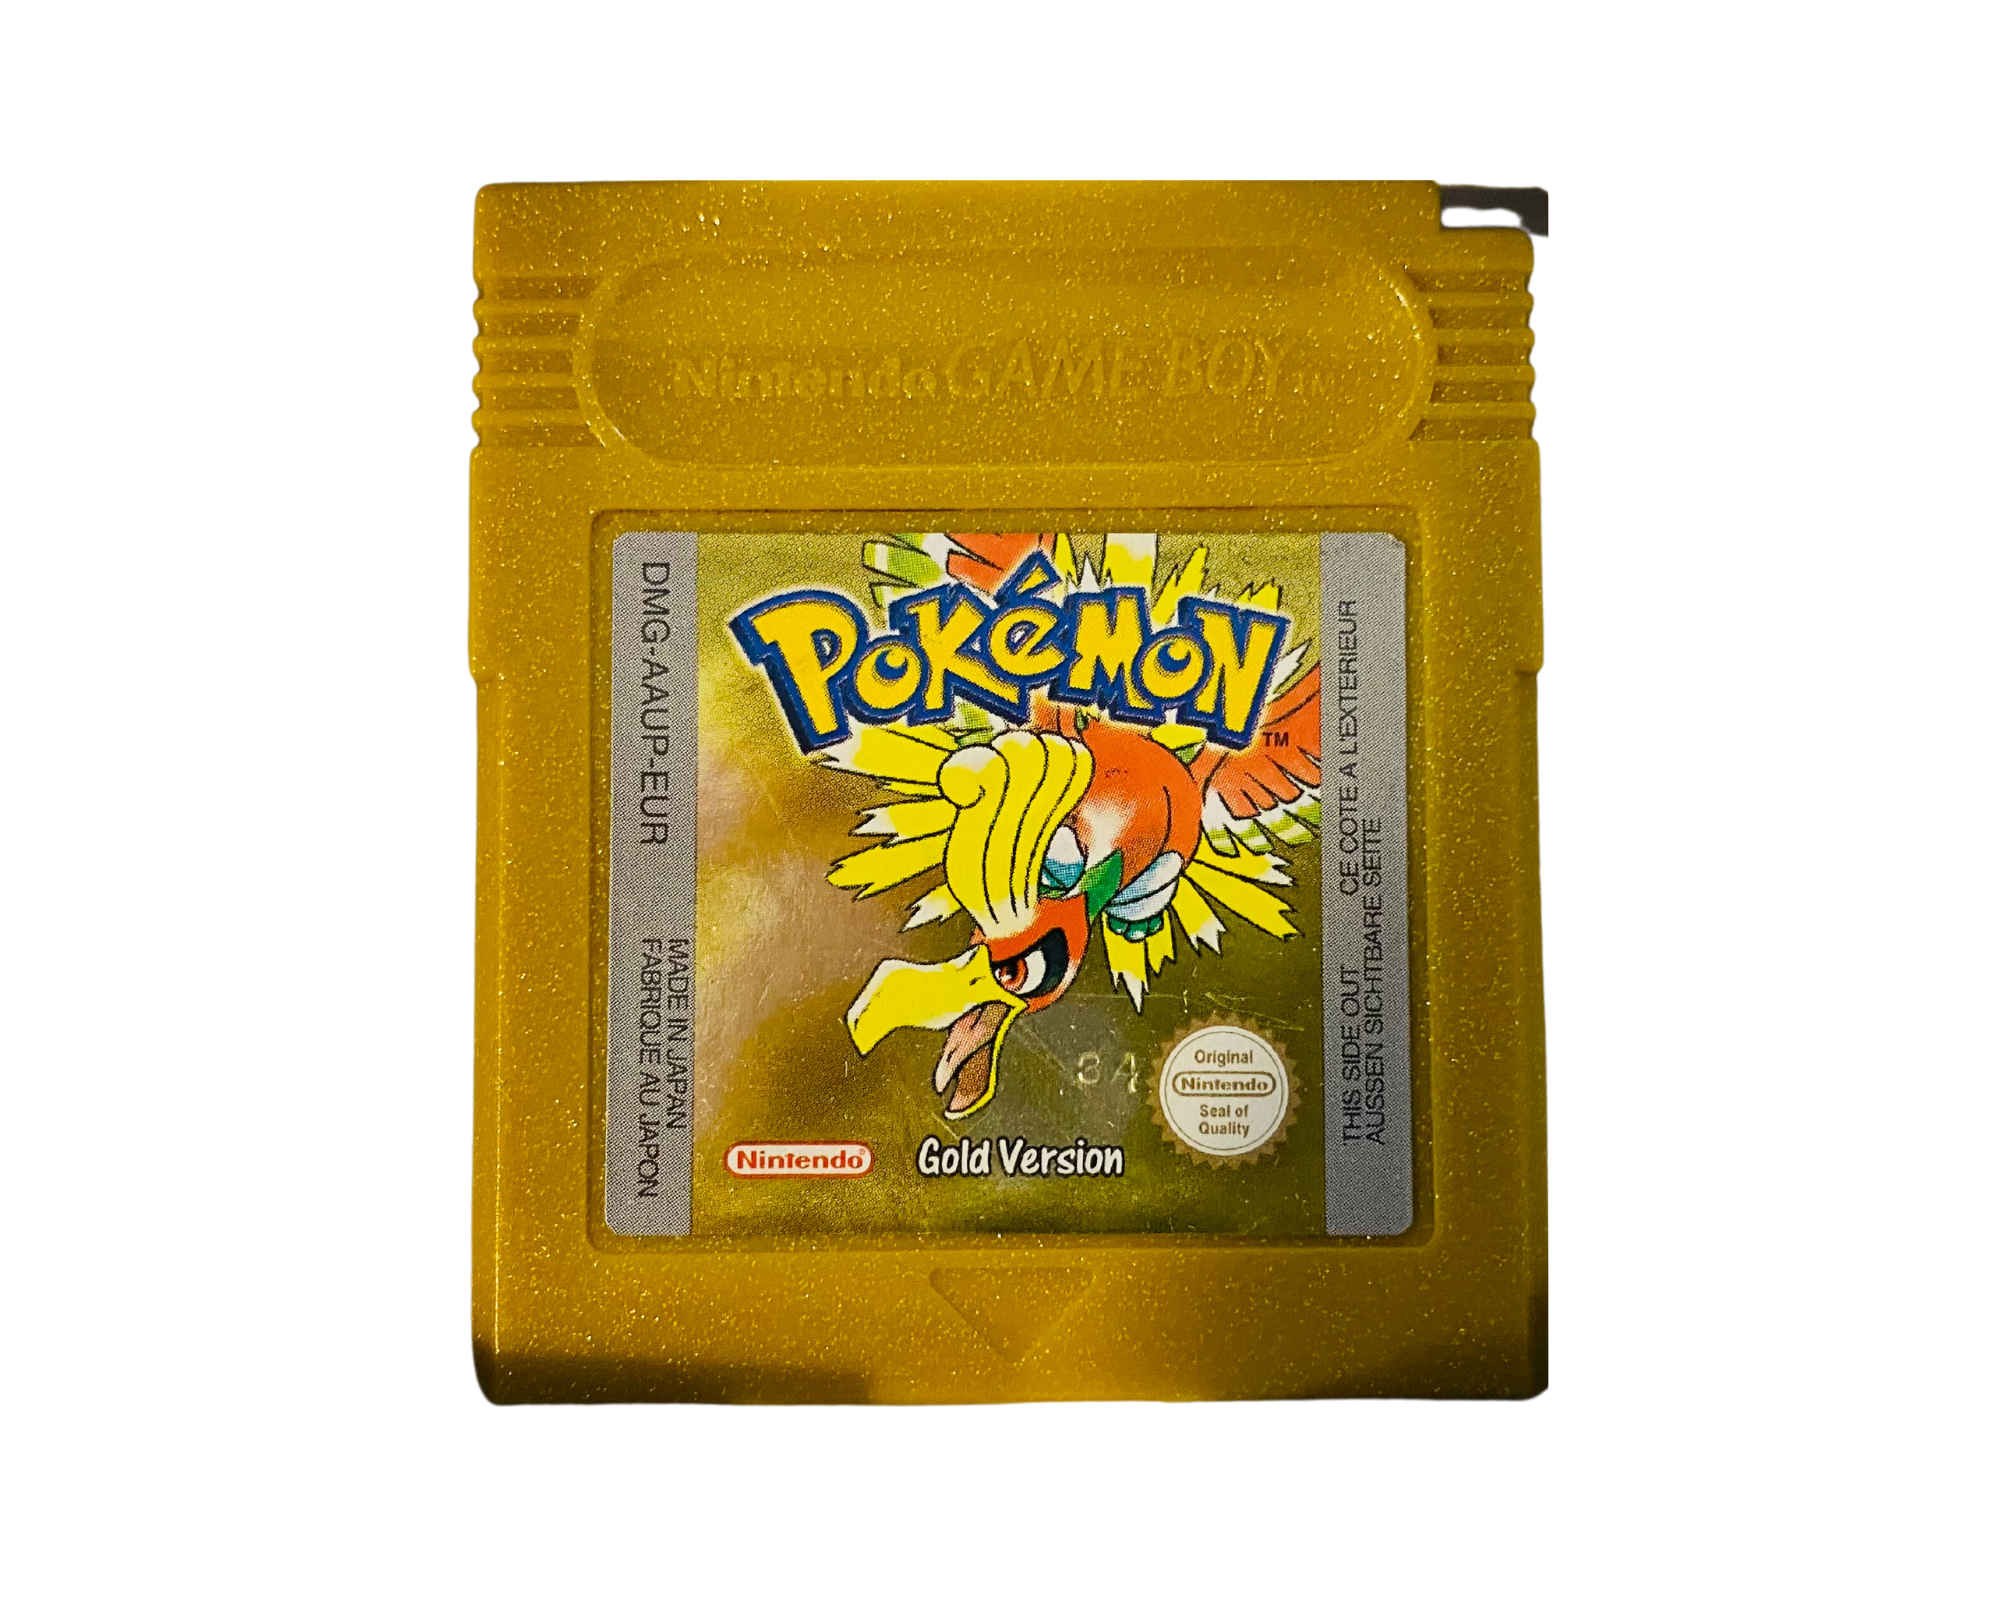 Pokemon Yellow Original